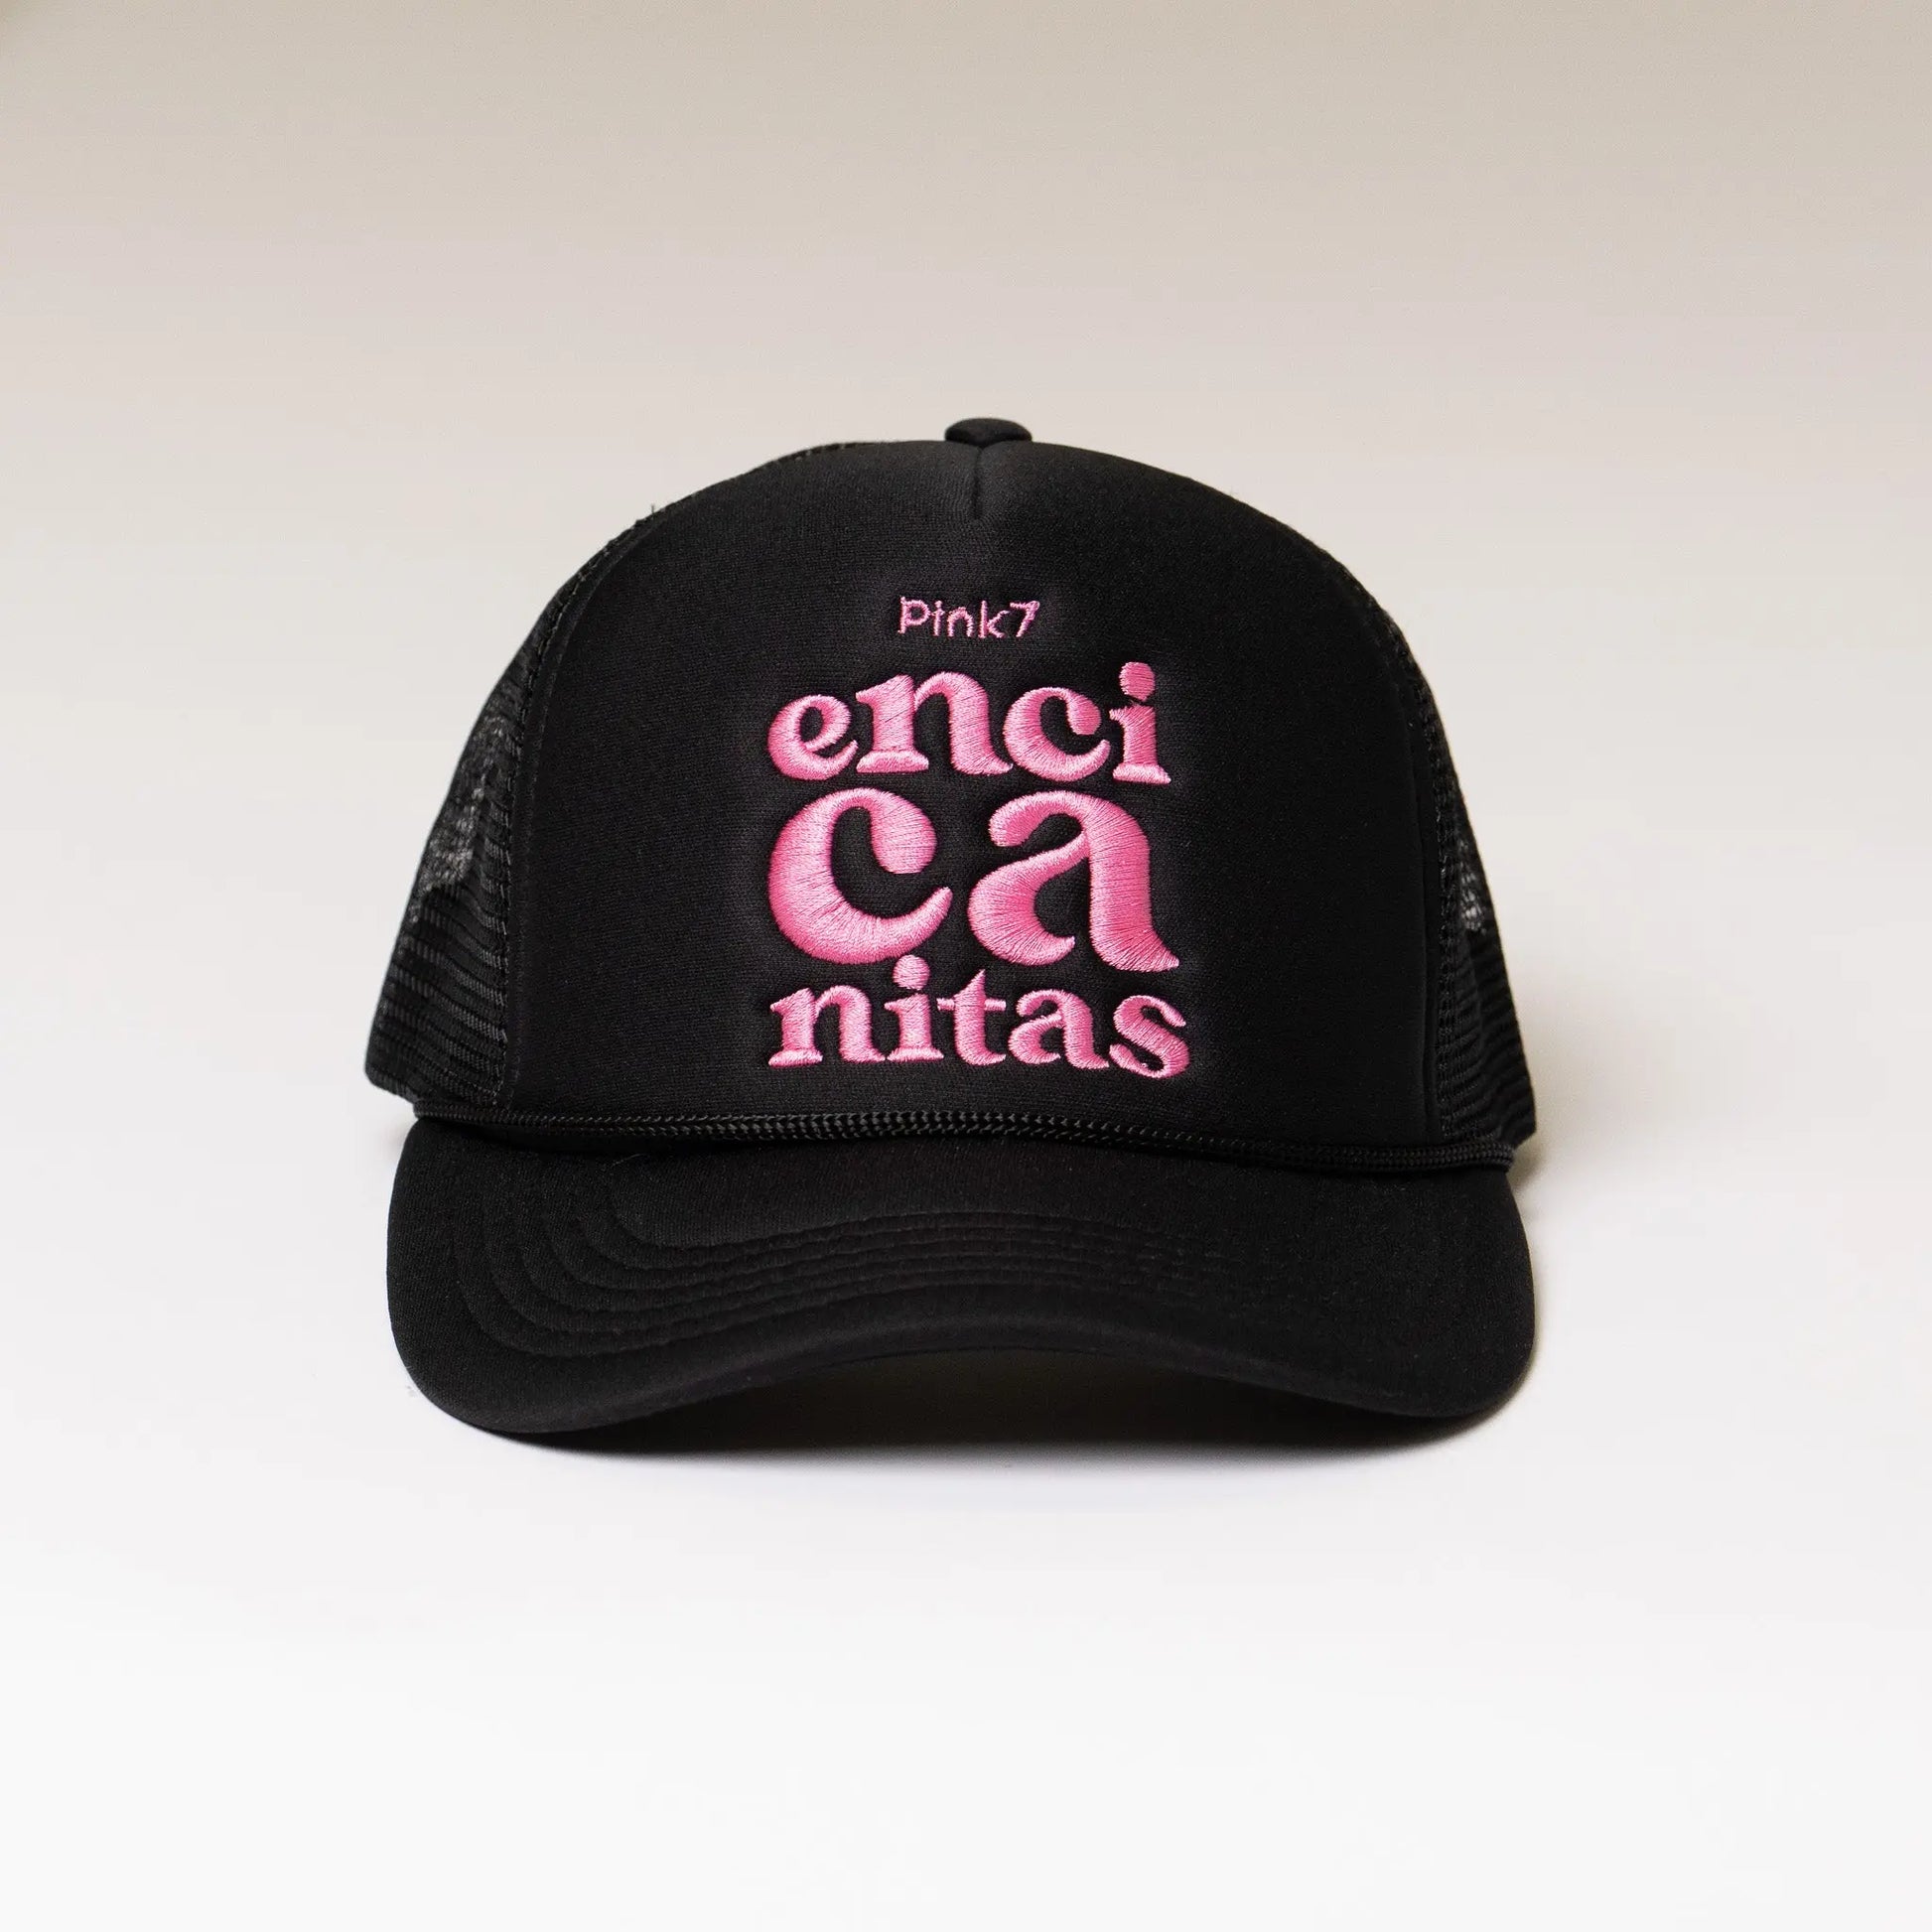 Vintage Encinitas Trucker Hat - Black - Pink7